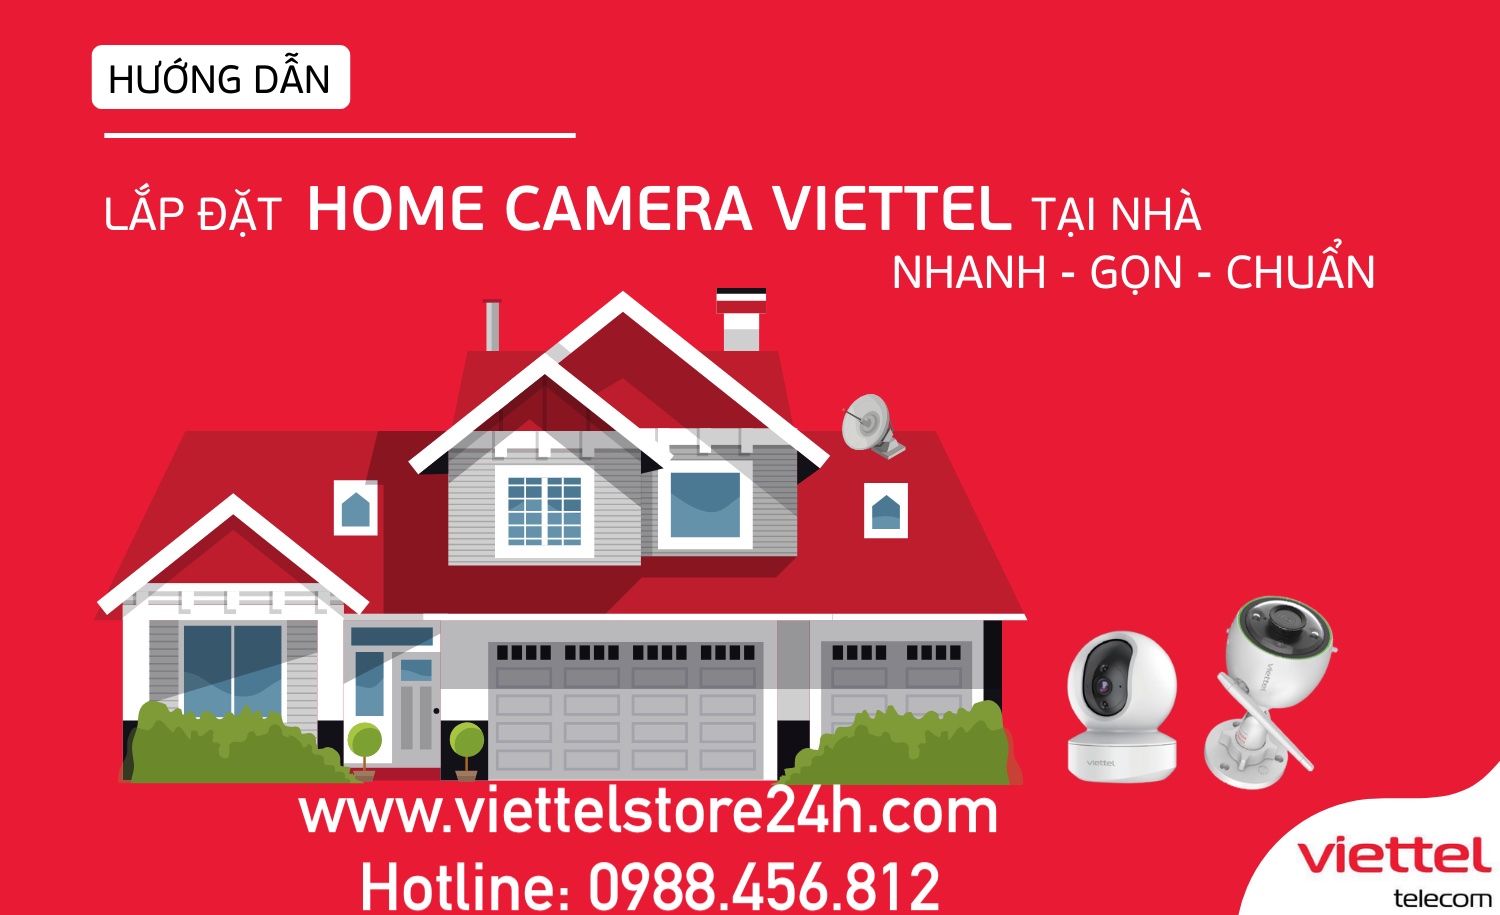 Chi phí lắp đặt home camera Viettel và cước thuê bao hàng tháng